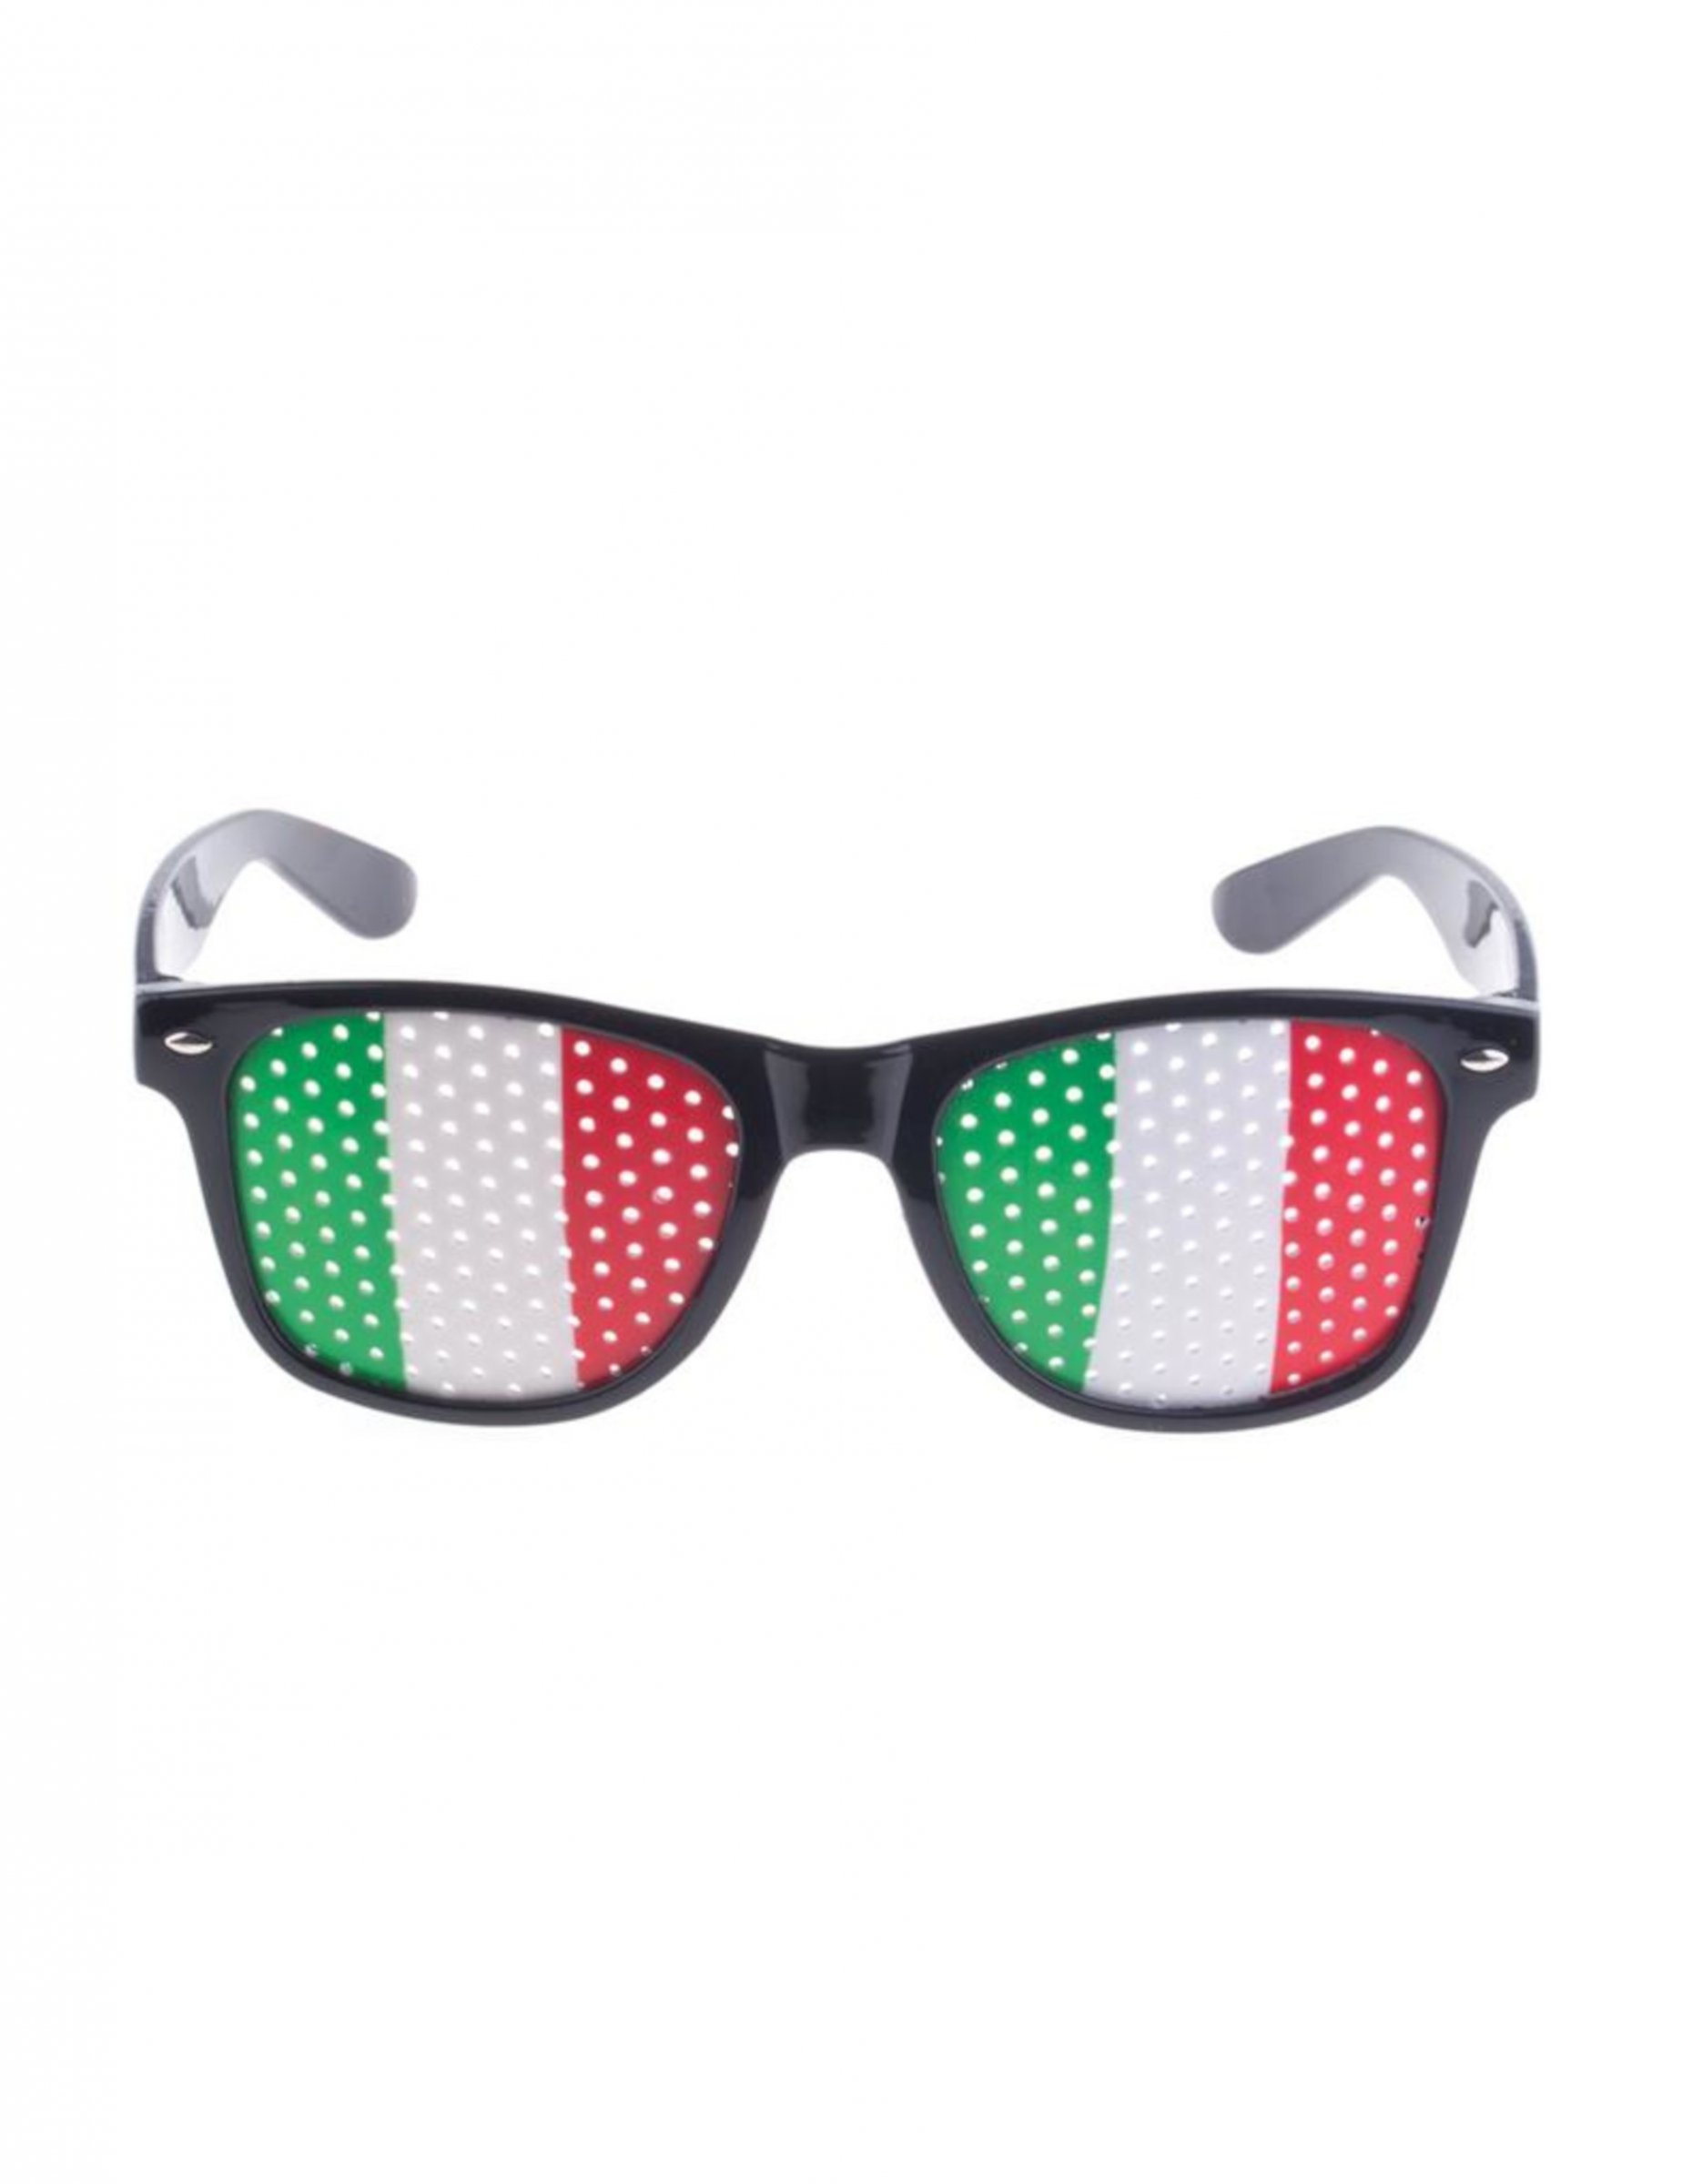 Partybrille Italien Fanbrille Partyaccessoire weiß-rot-grün von ESPA